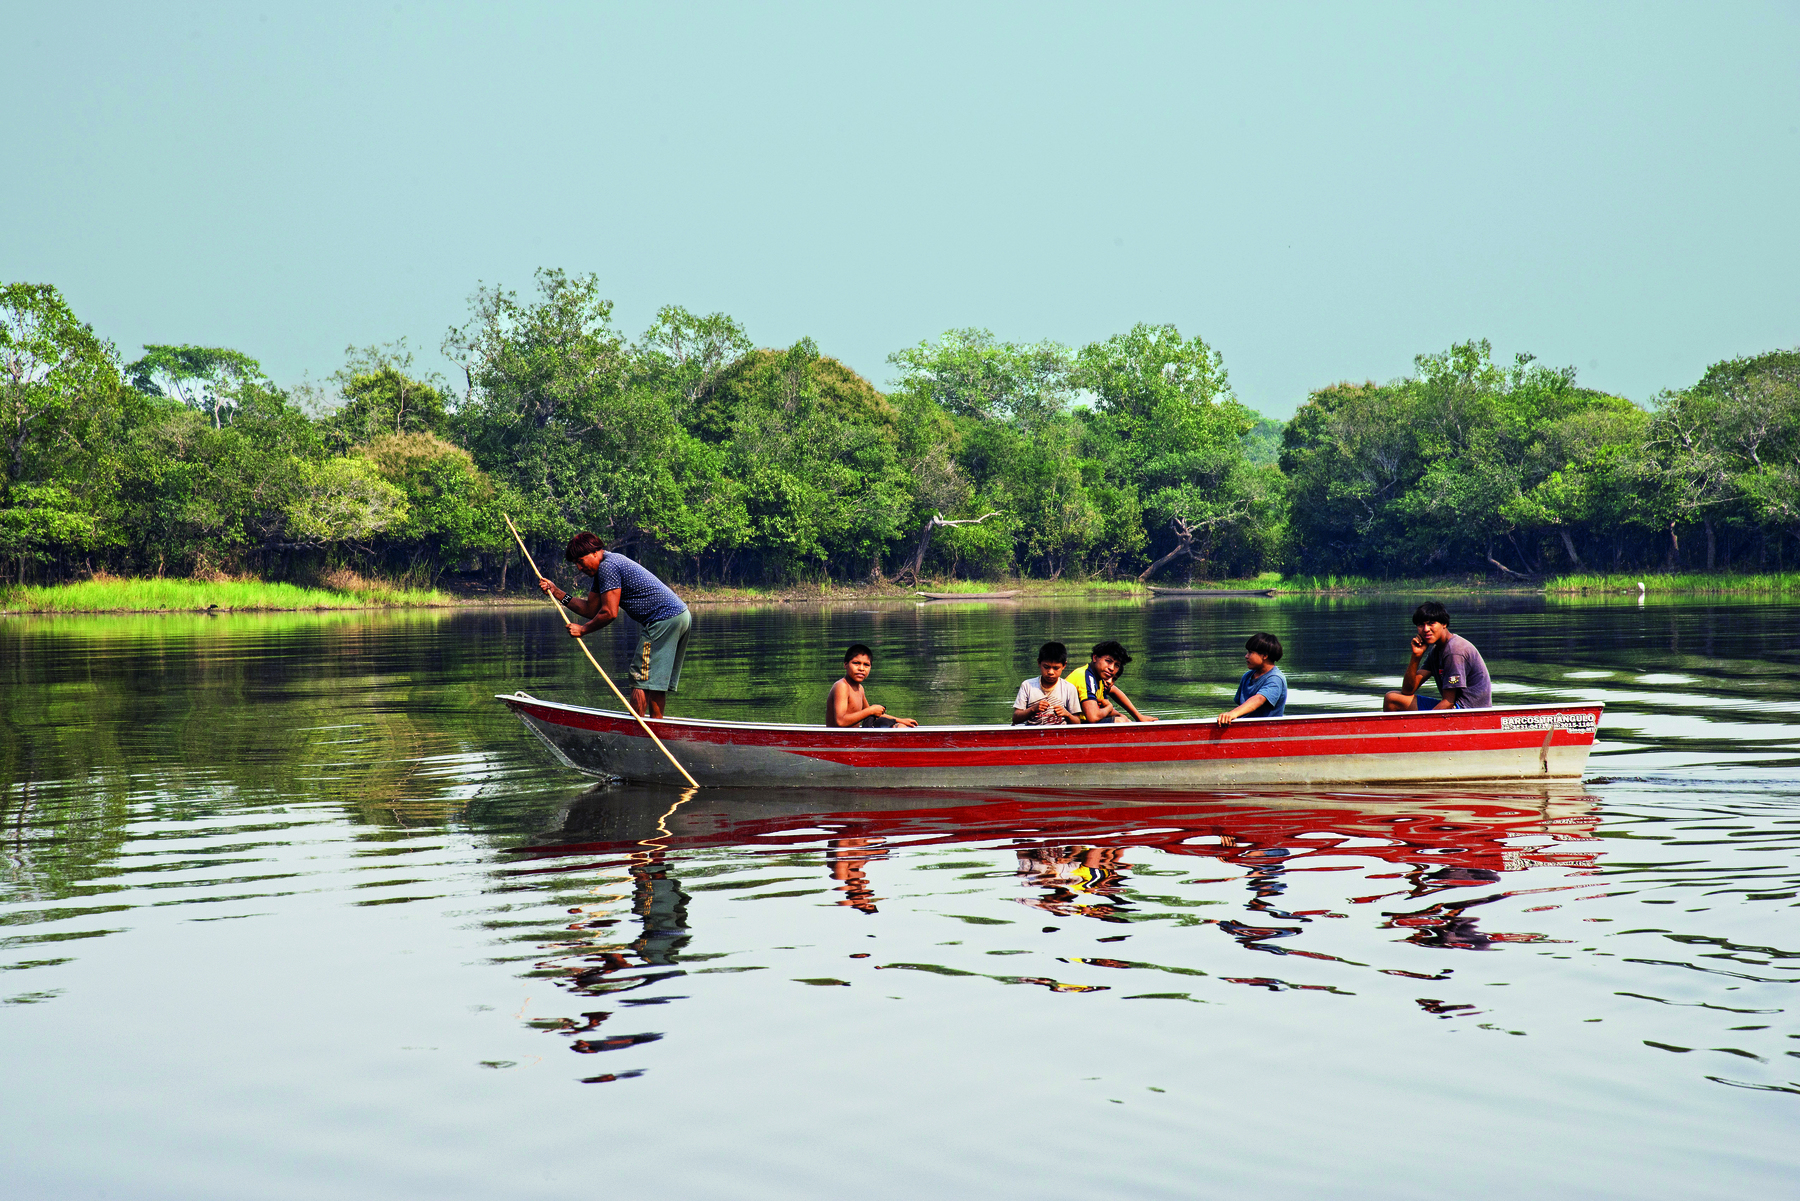 Fotografia. Pessoas indígenas navegando no rio em uma canoa. Um adulto está em pé, remando. Algumas crianças estão sentadas na embarcação.